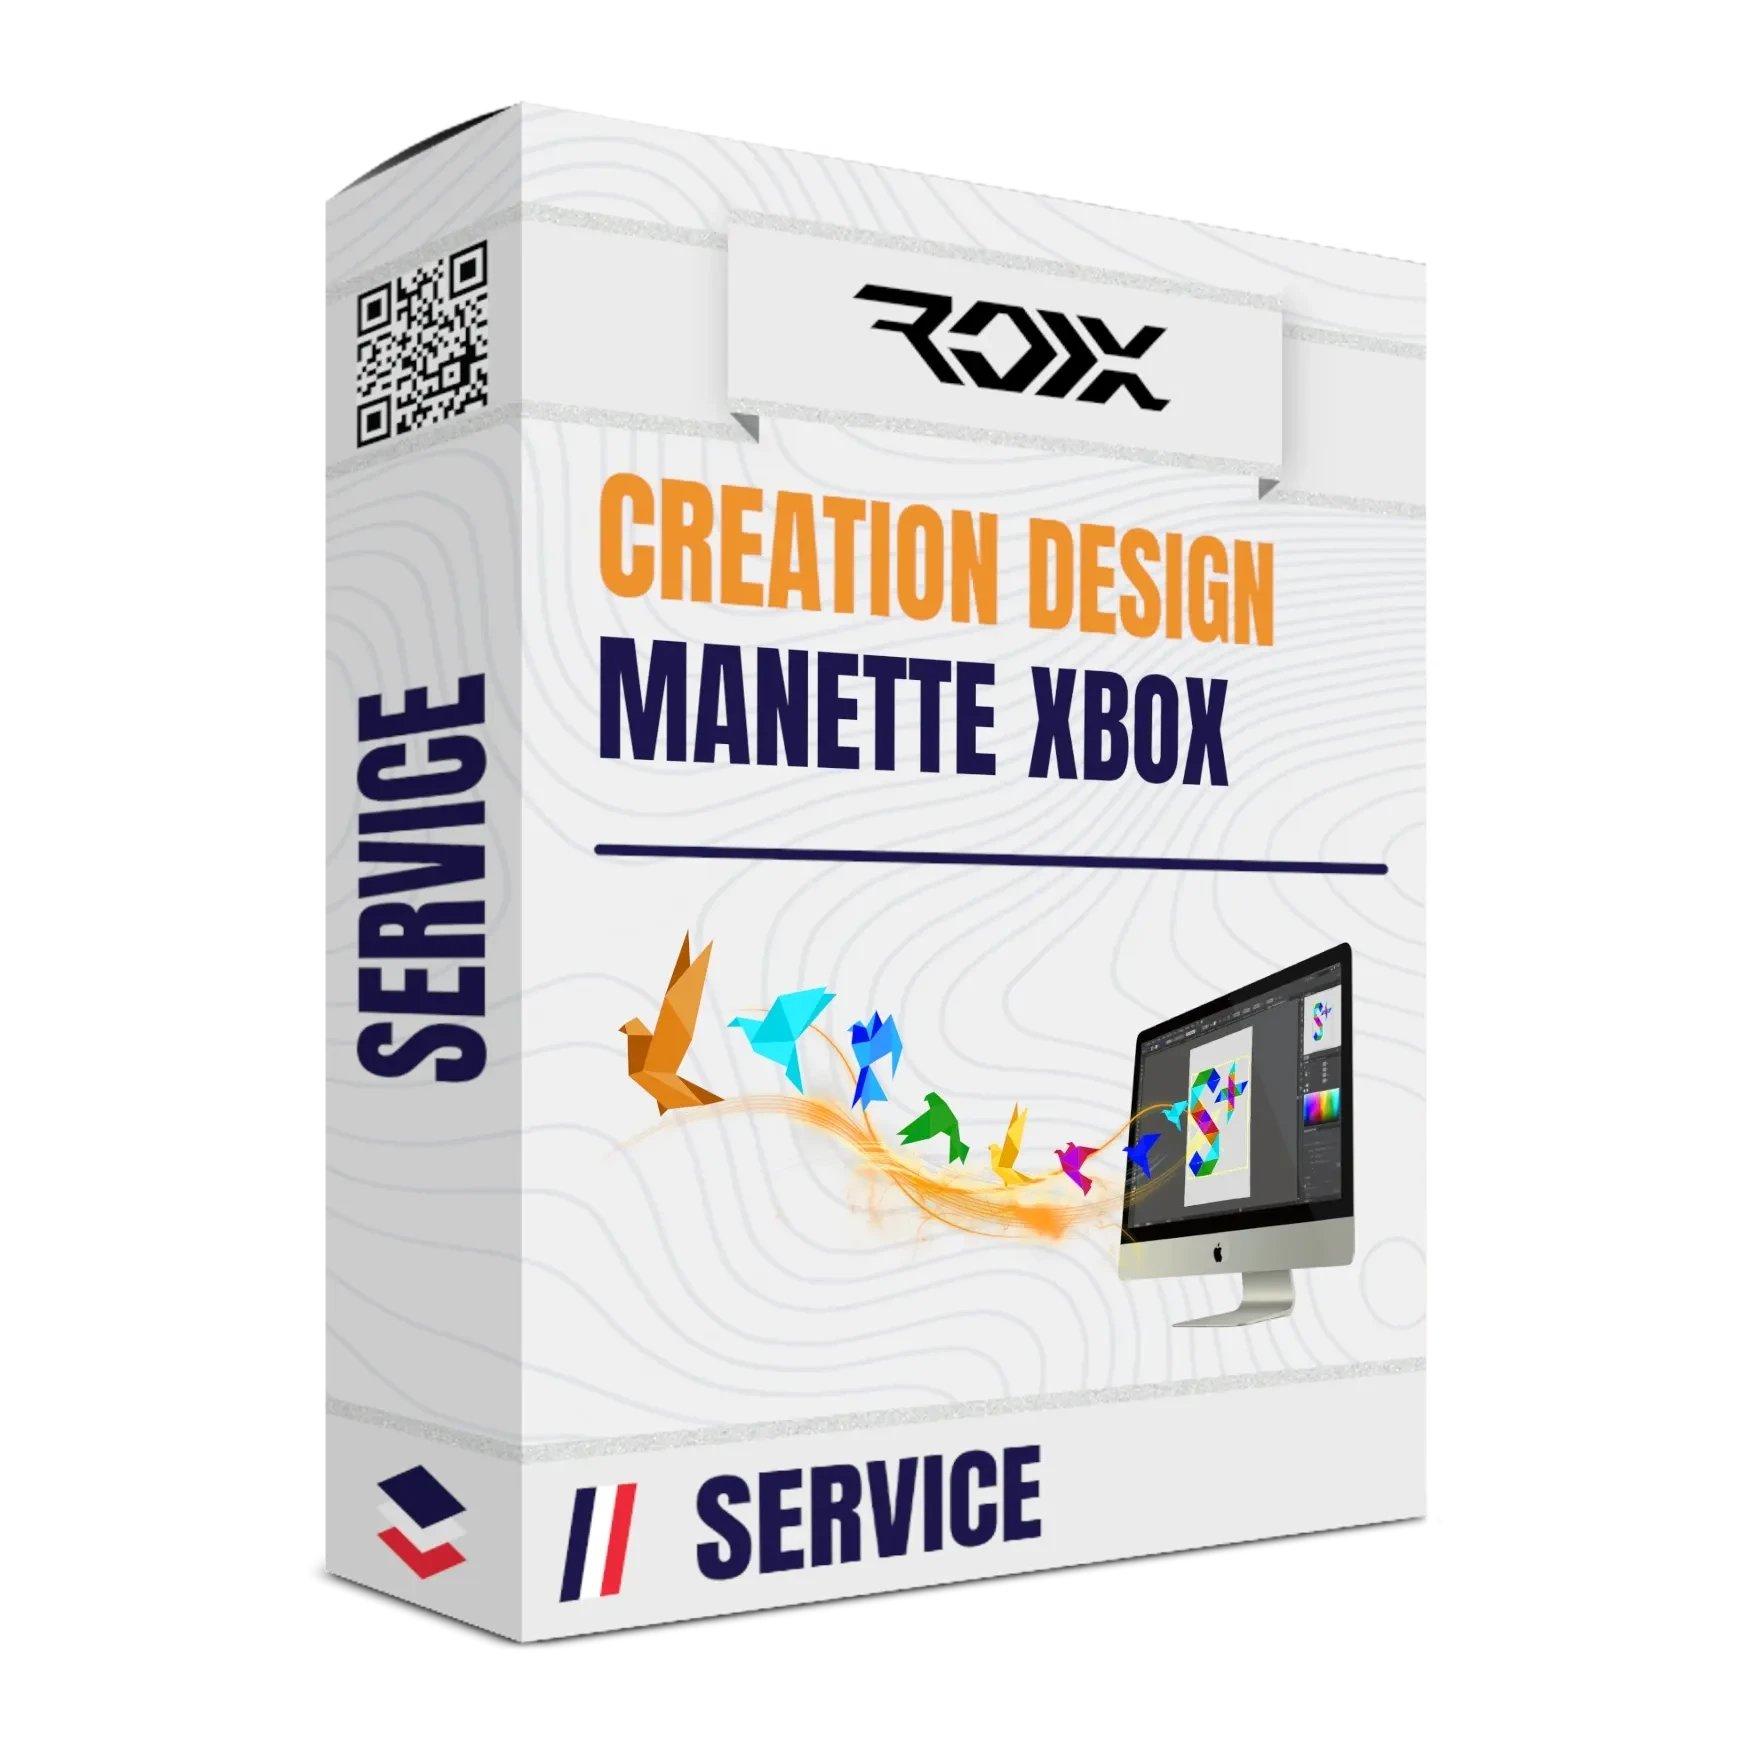 Création Design Manette XBOX